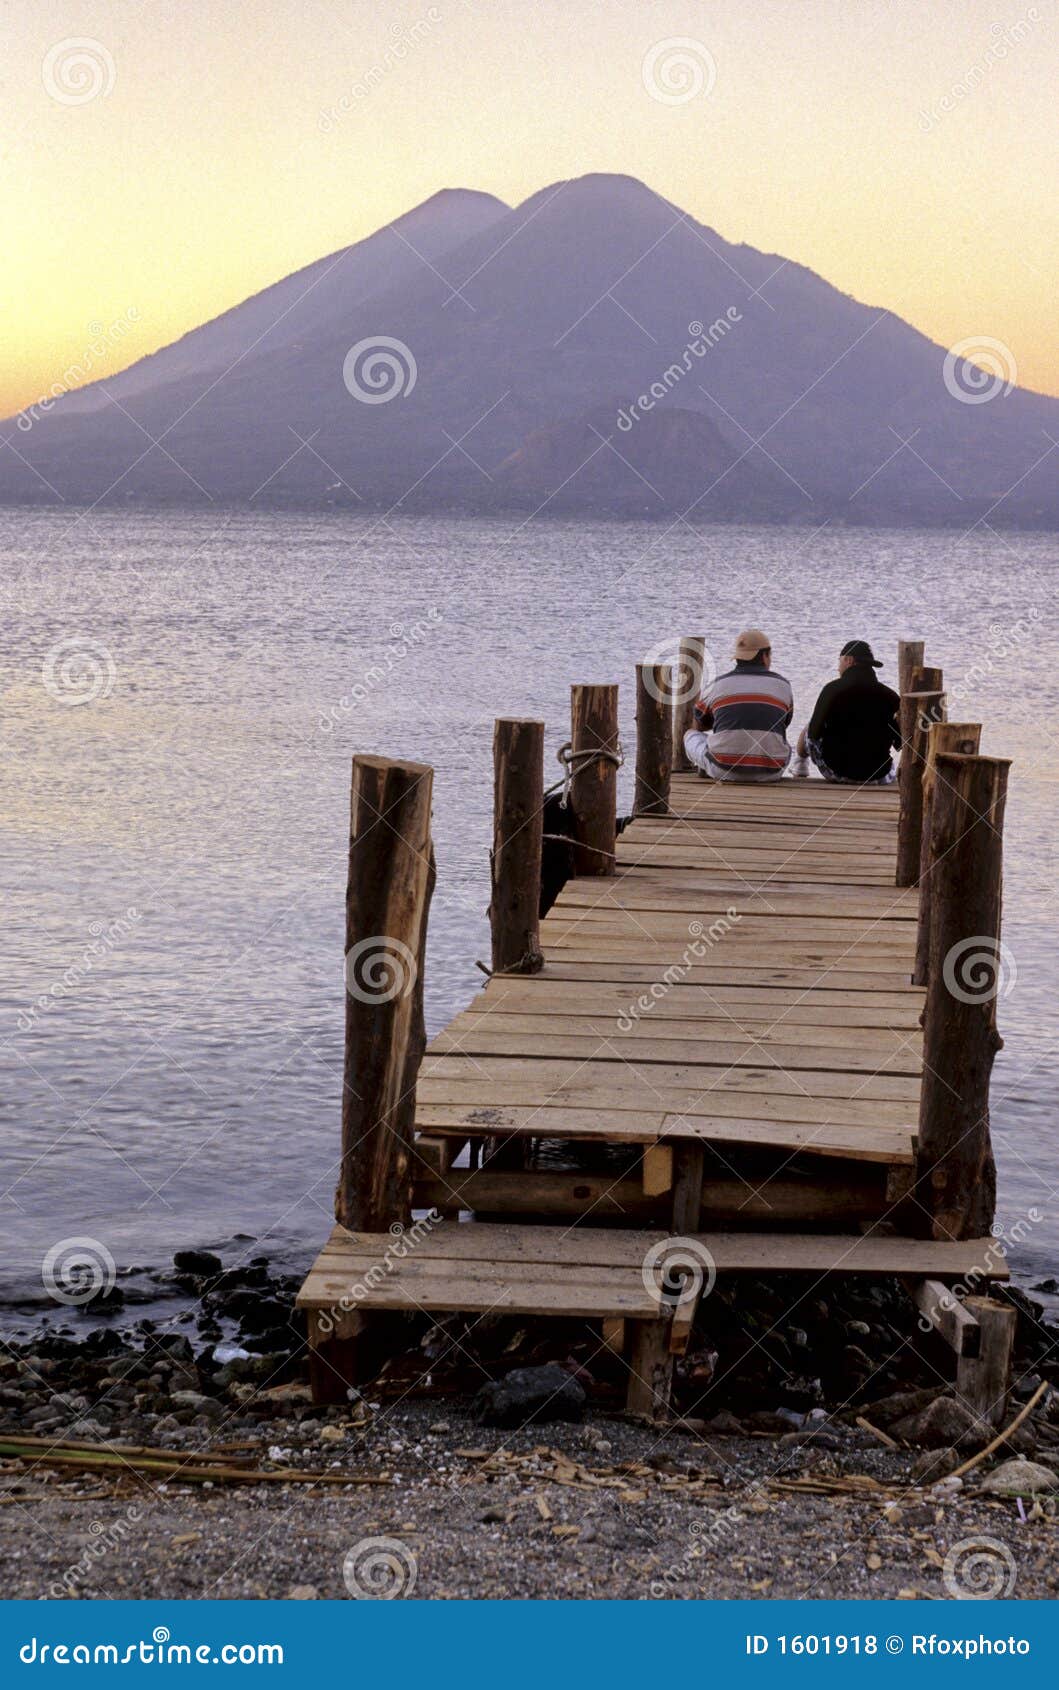 sunrise- lake atitlan, guatemala